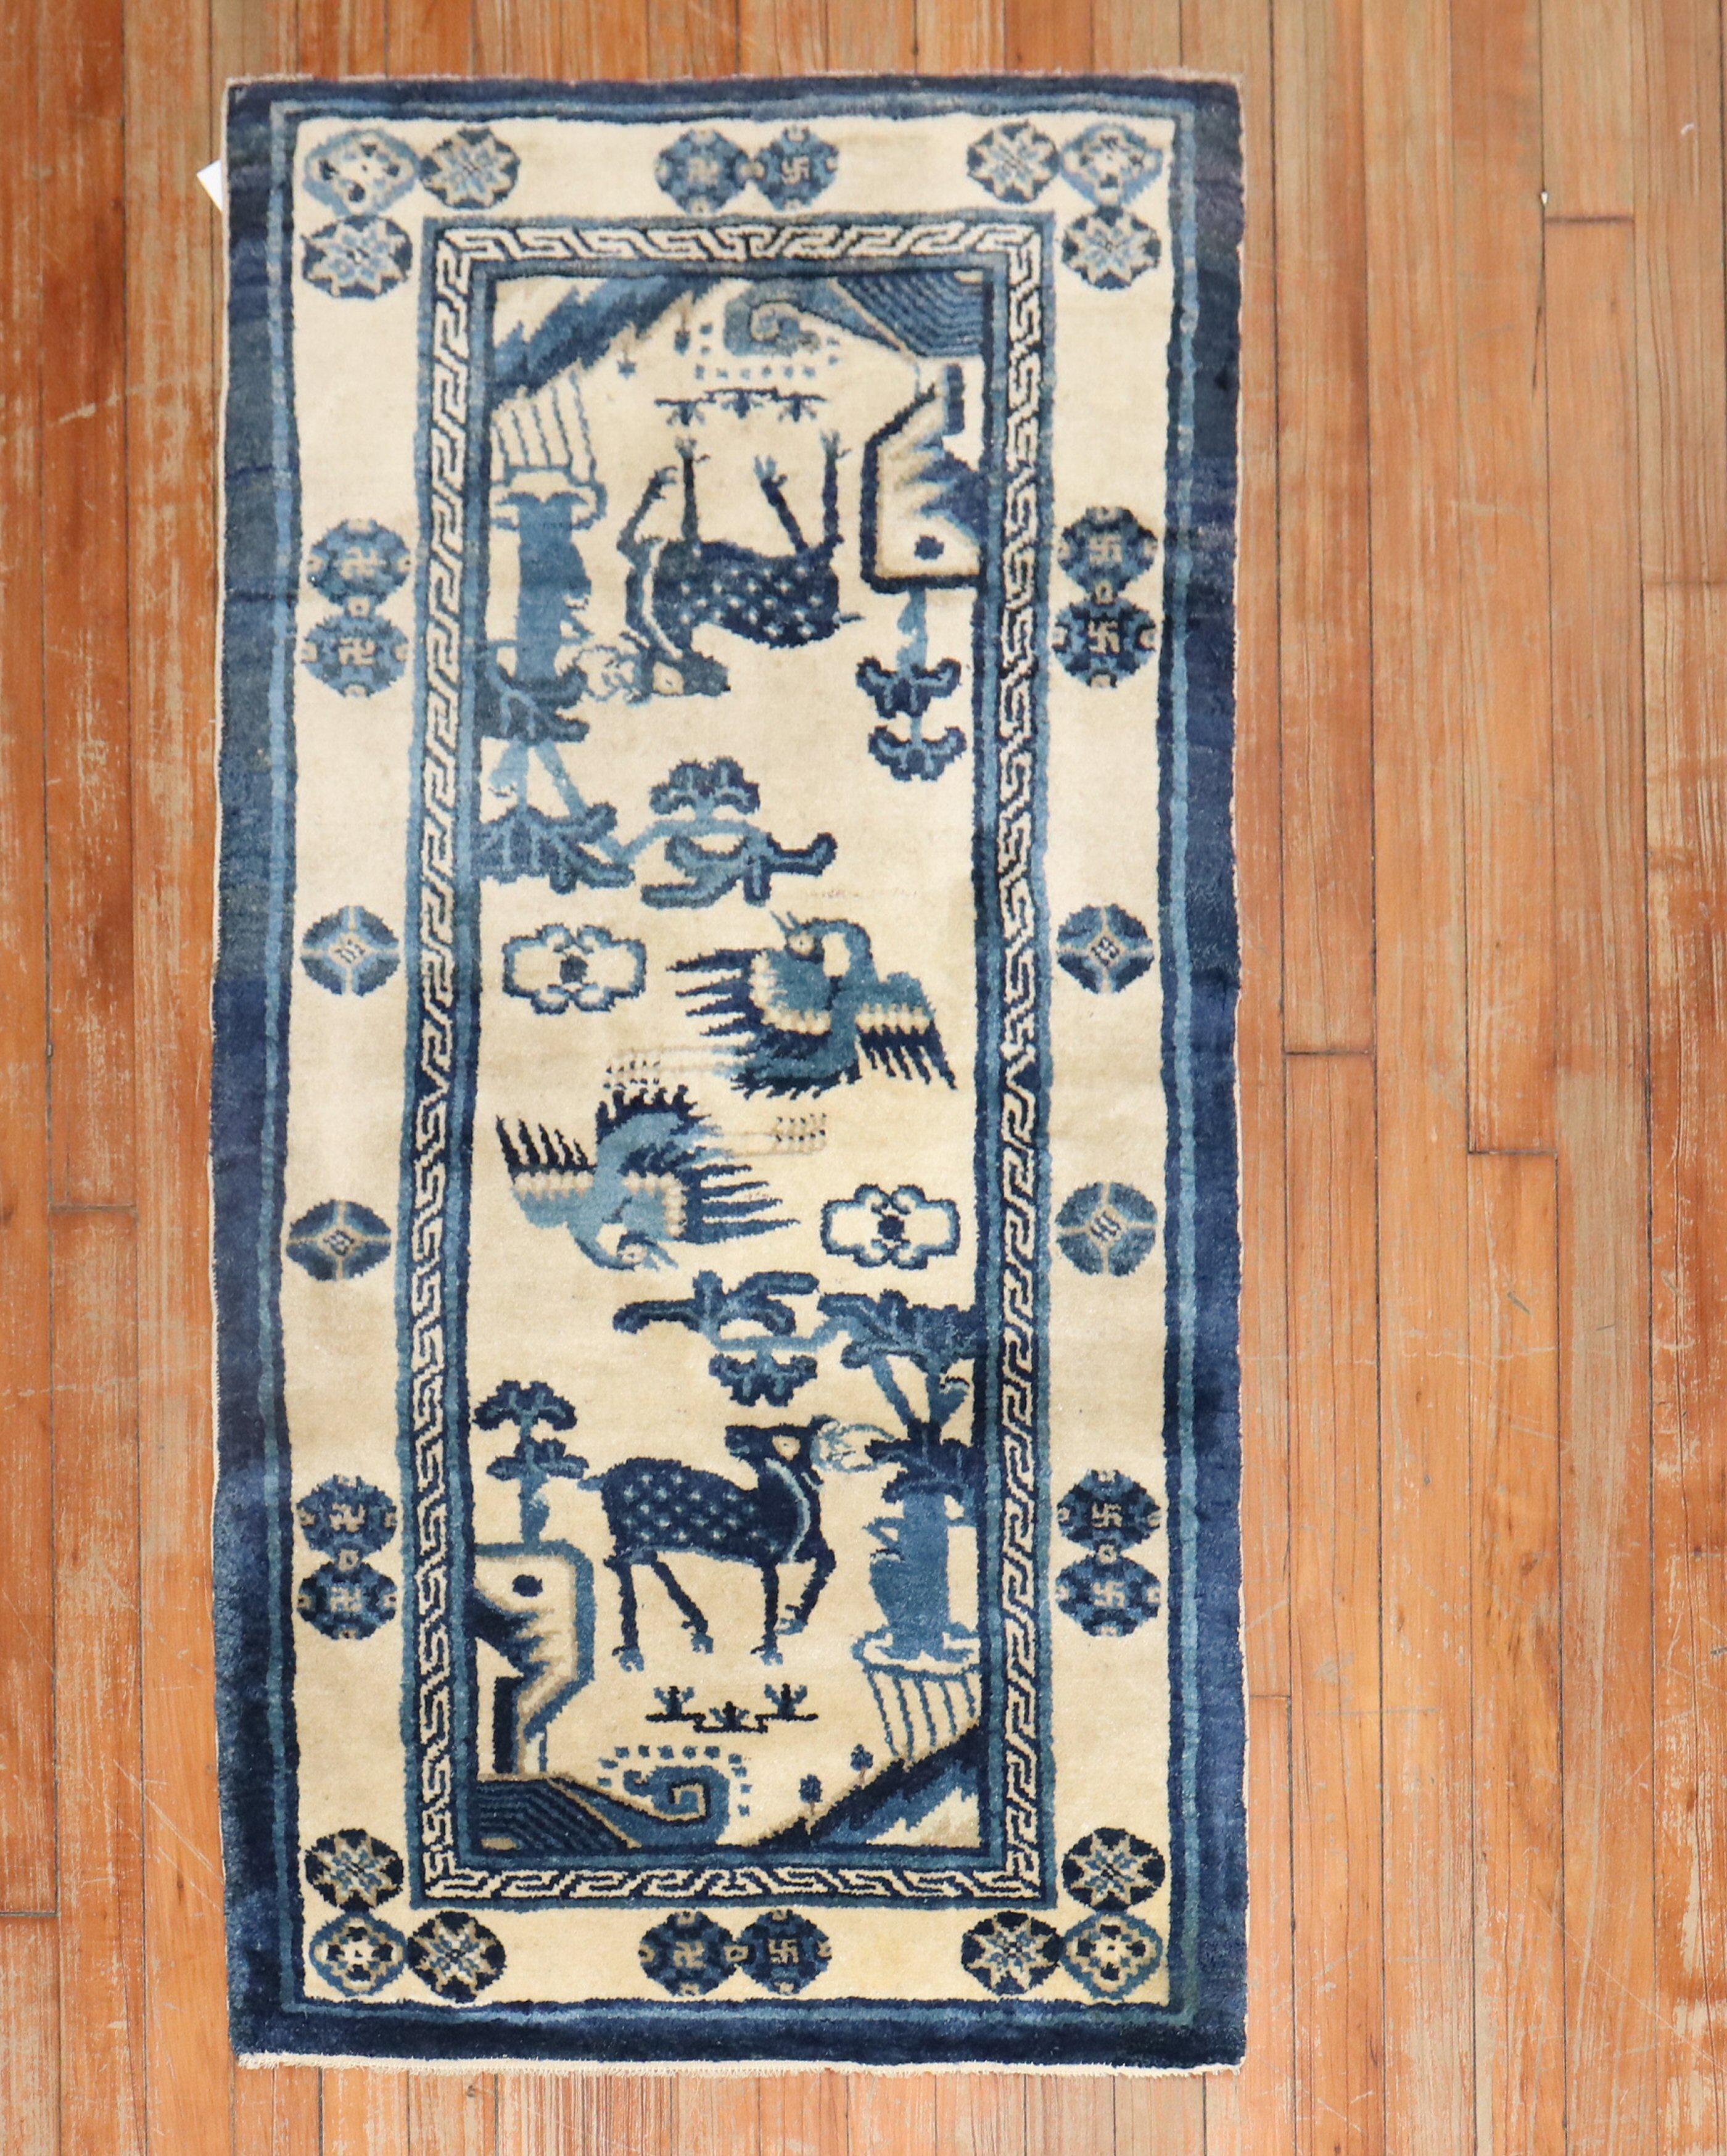 Chinesischer Bildteppich aus dem frühen 20. Jahrhundert mit Tiermotiven in Hellblau, Marine und Elfenbein

Maße: 2'3' x 4'5''.